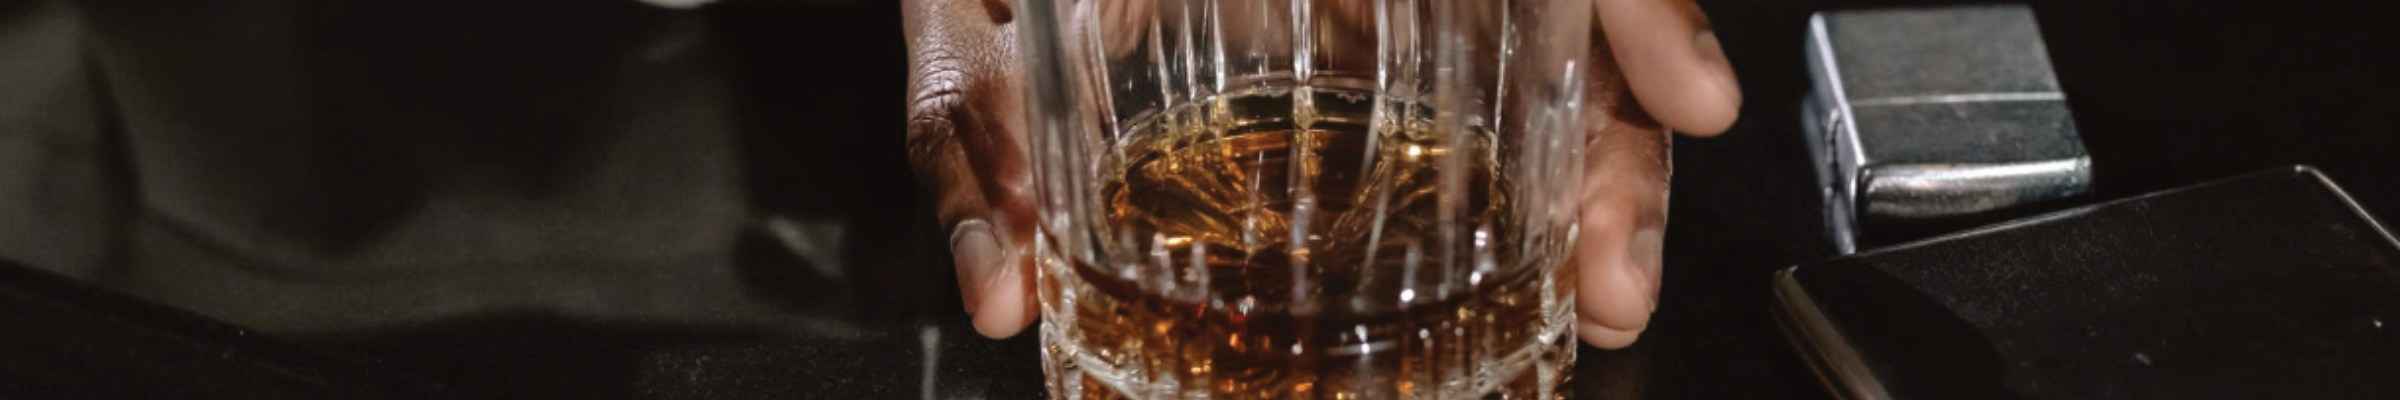 Achat Armagnac & Cognac en ligne | Conroy Vins et Spiritueux